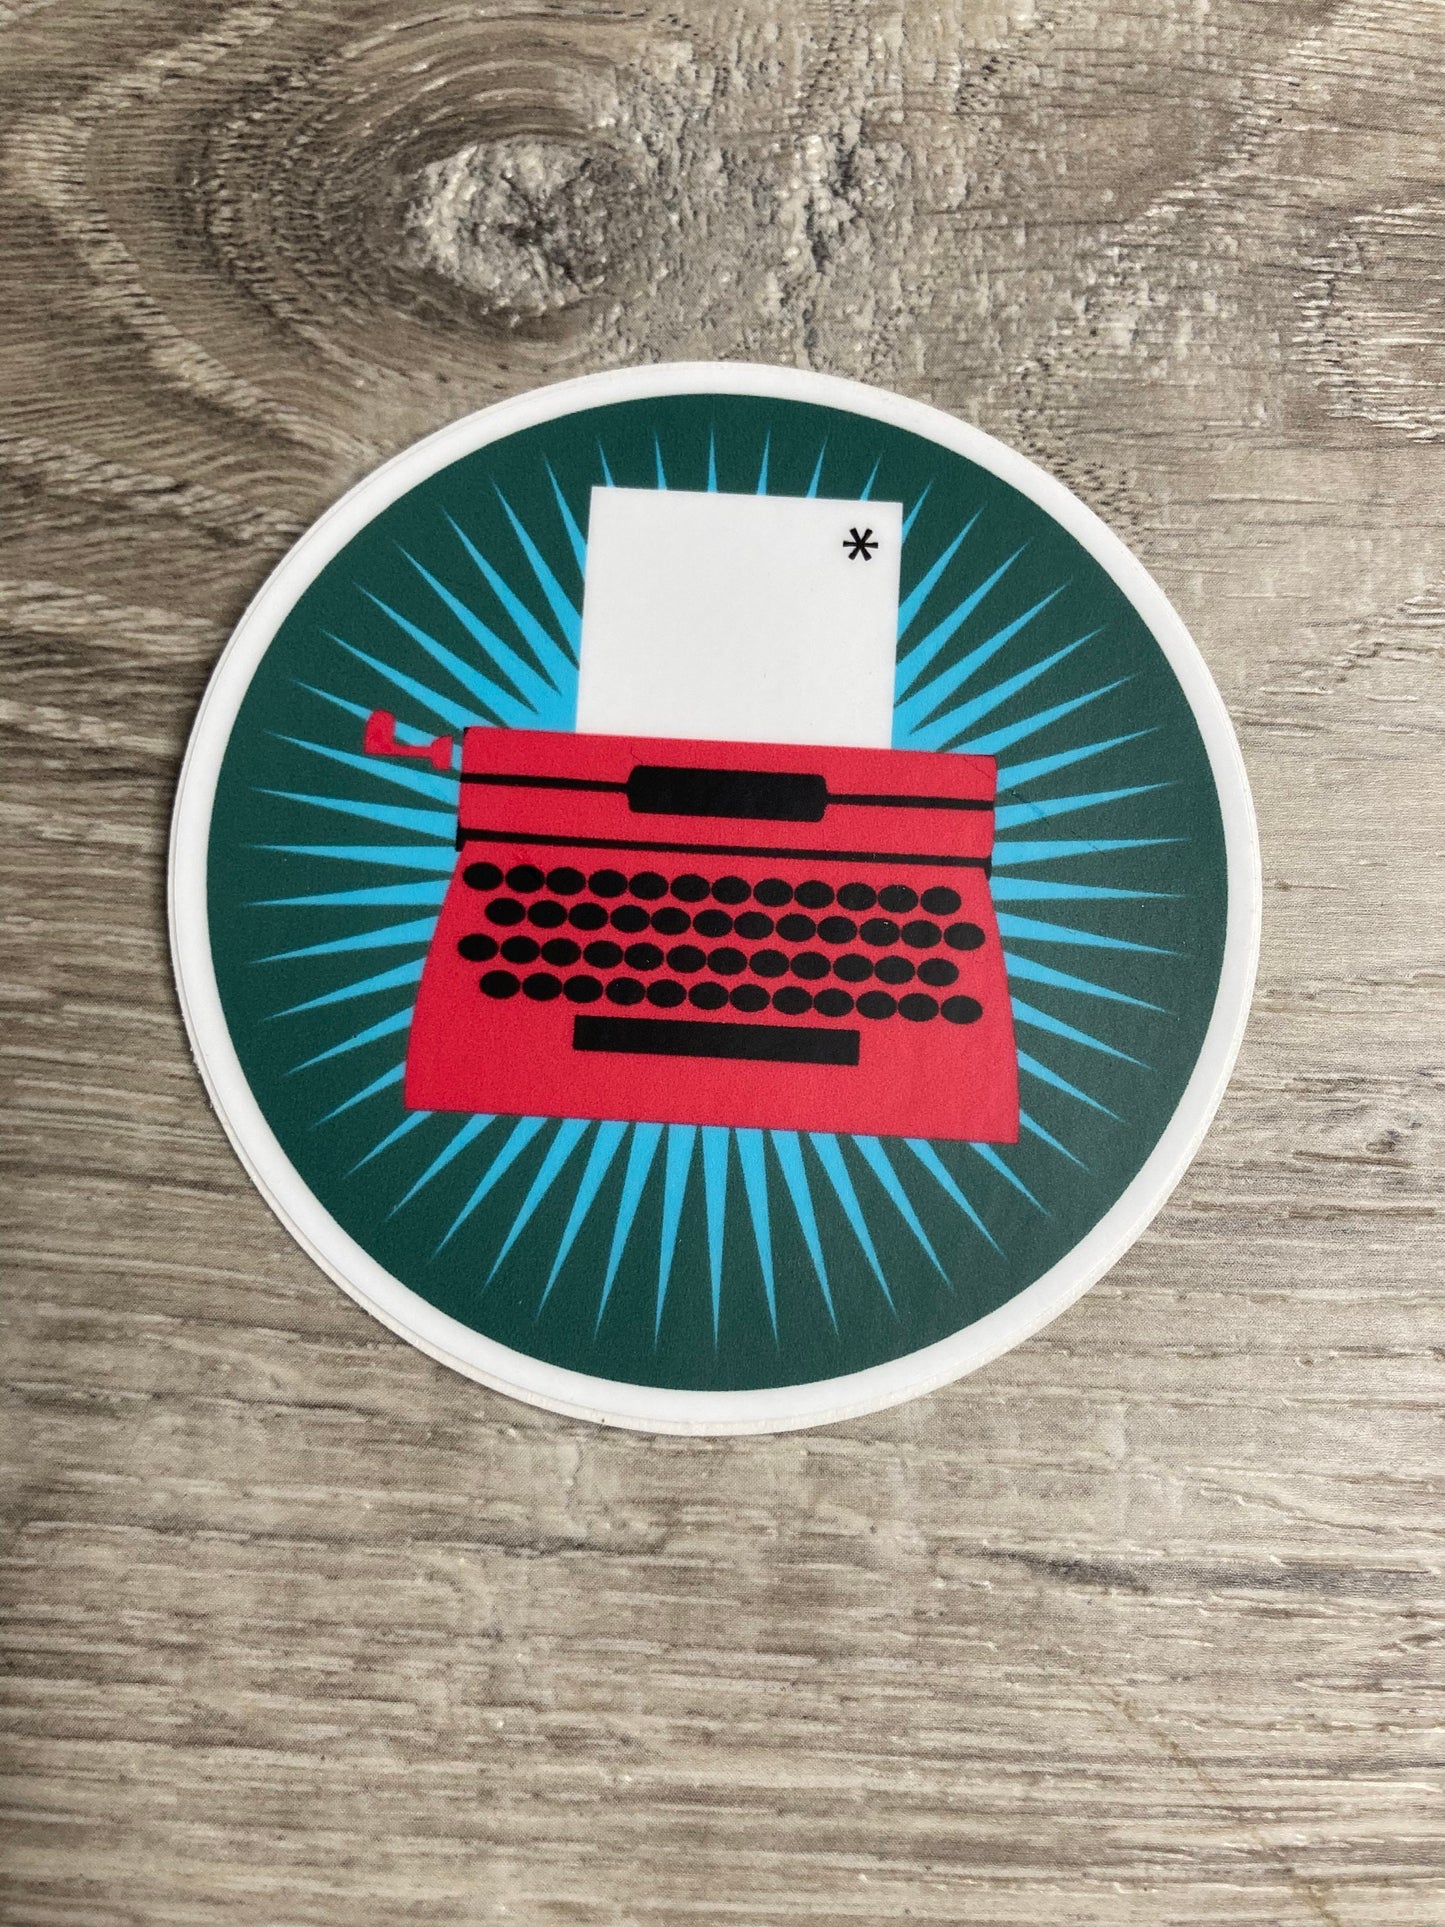 Typewriter Circle Vinyl Sticker, Writer Sticker, Gift for Writers, Retro Typewriter